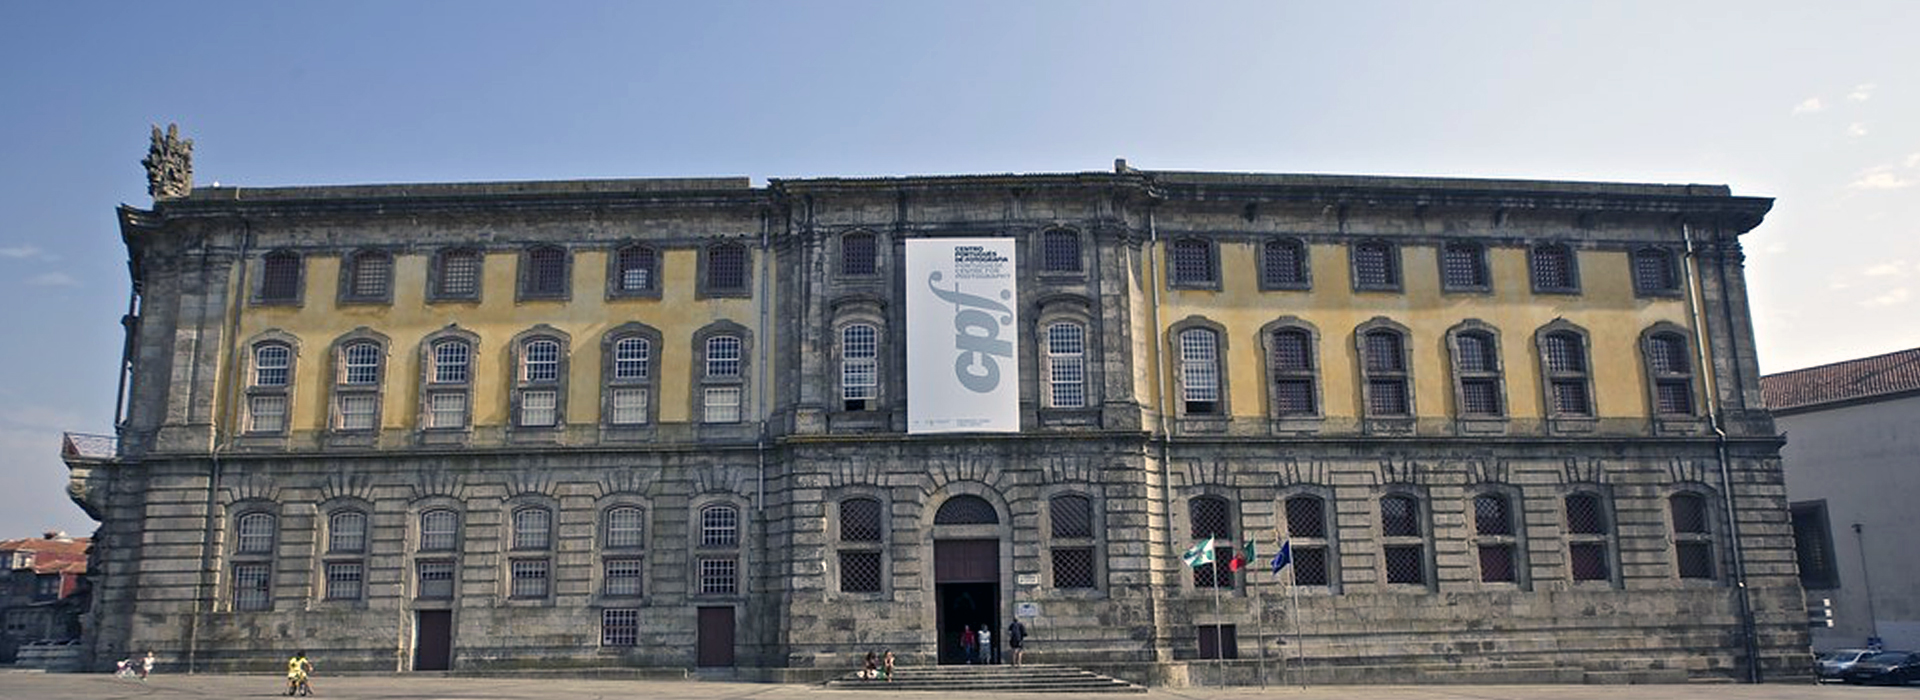 Portuguese Centre of Photography (Centro Portugues de Fotografia)